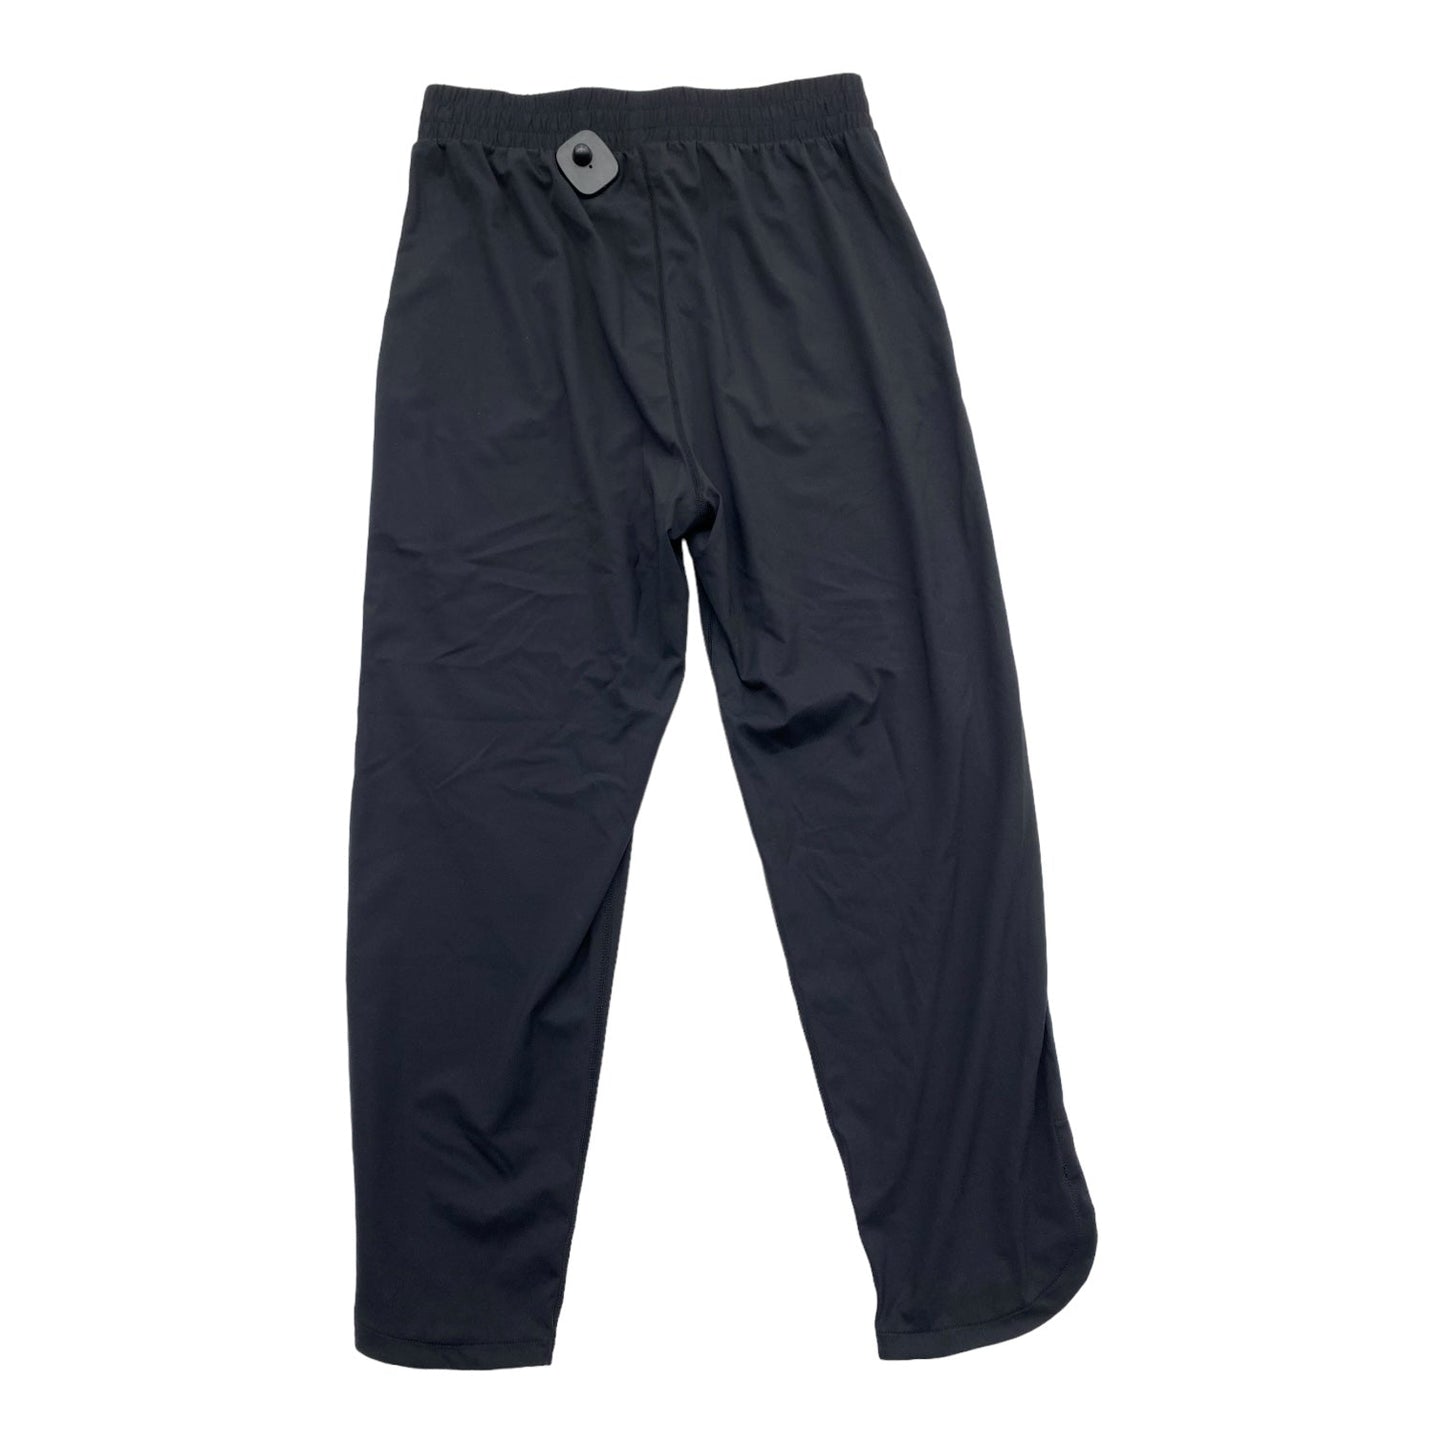 Athletic Pants By Mono B  Size: M